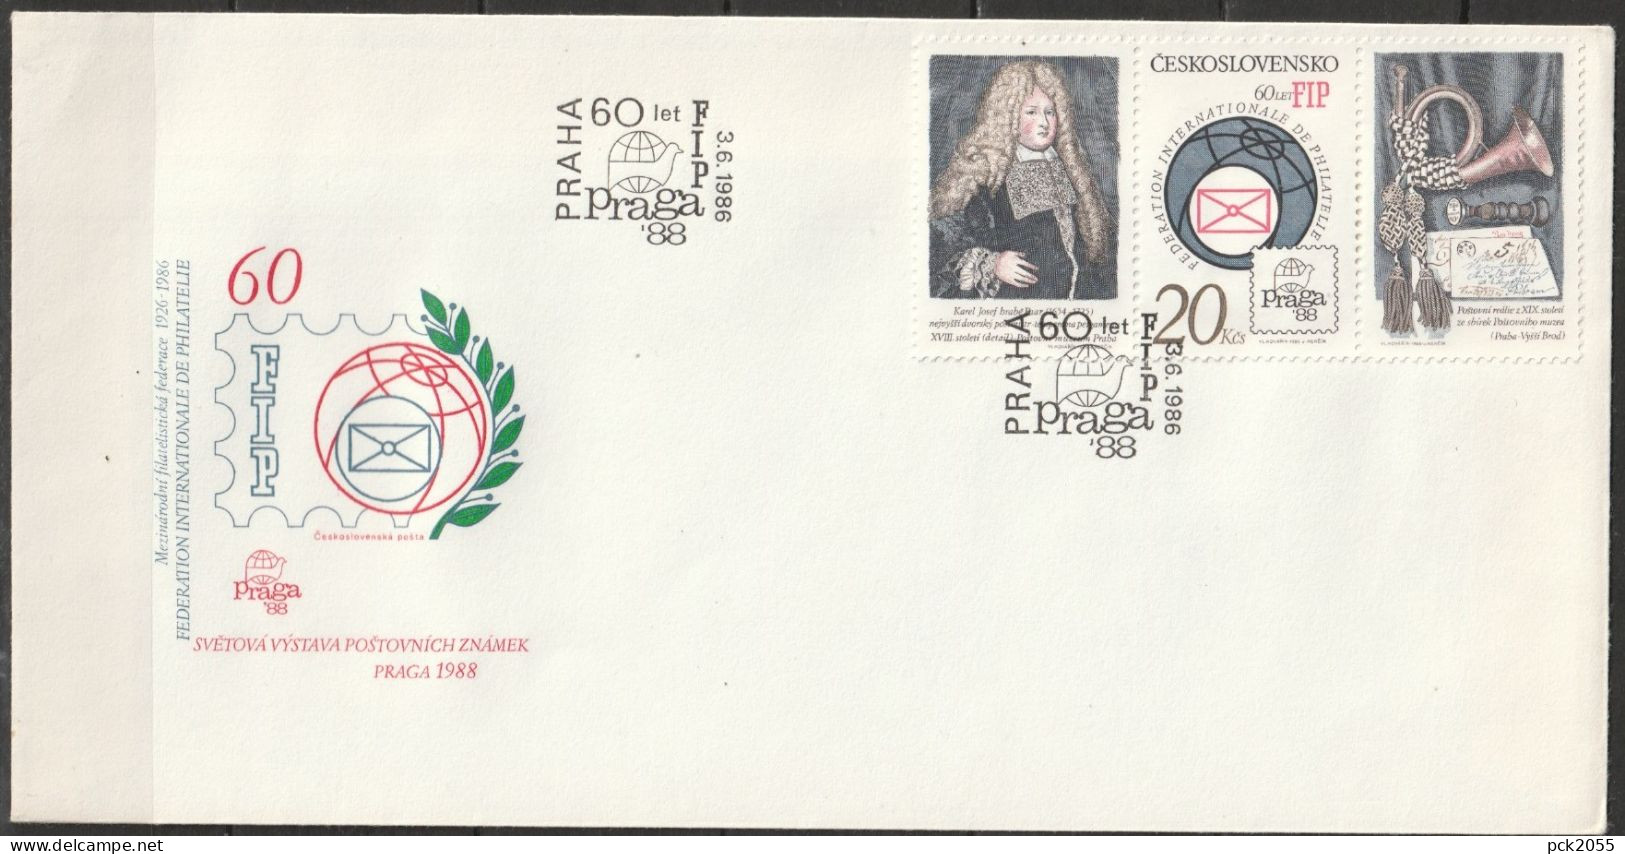 Tschechoslowakei 1986 FDC MiNr.2864 ABC  Briefmarkenausstellung, Praga'88 ( Dl 9 )günstige Versandkosten - FDC